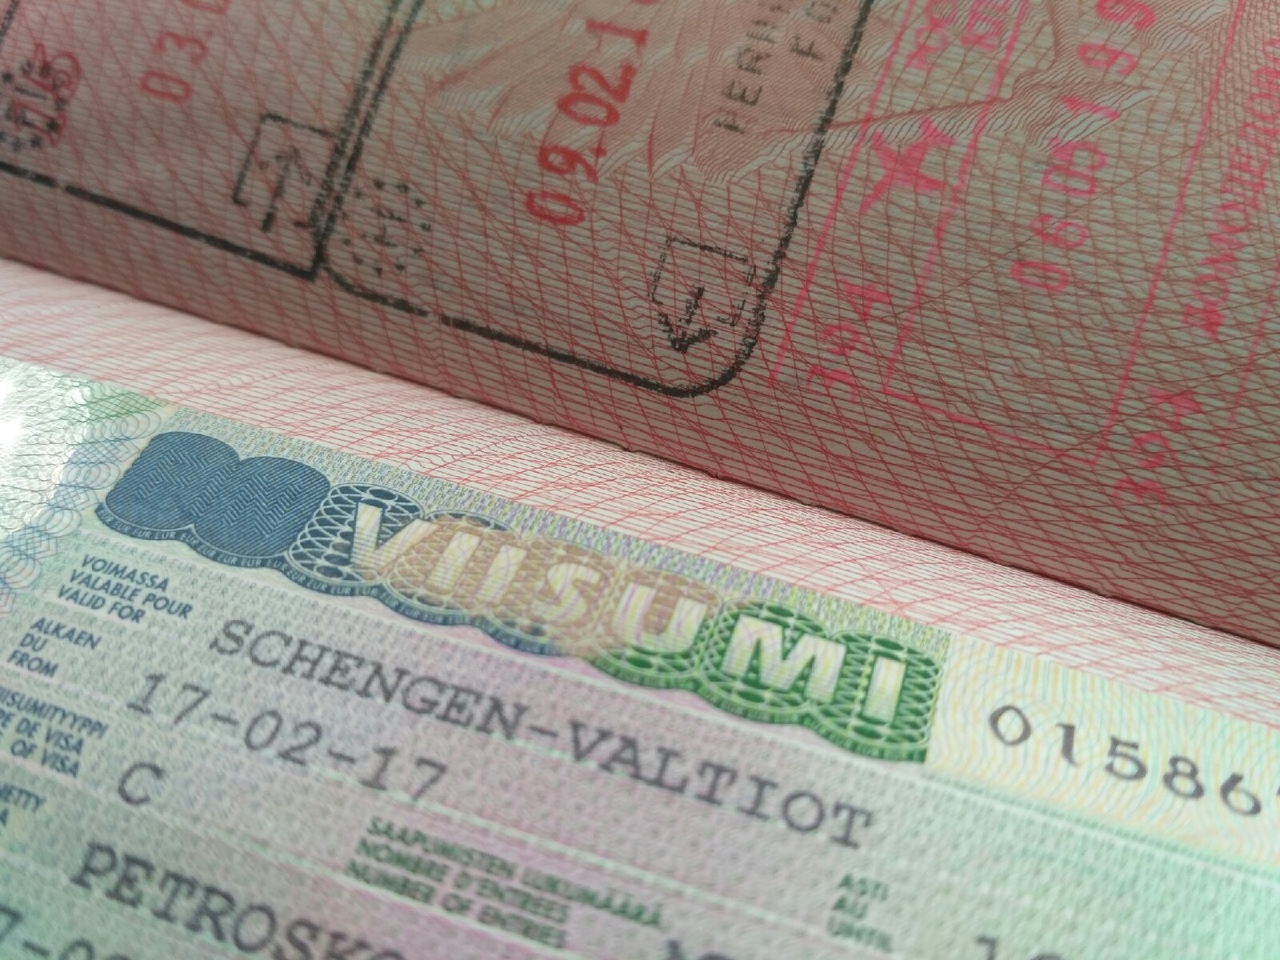 ЕС планирует также предотвратить так называемый «‎визовый шопинг». Иными словами, оформление шенгенской визы в той стране, которая предъявляет наименьшие требования к заявителям и рассматривает заявление быстрее. Фото: Karjalan Sanomat